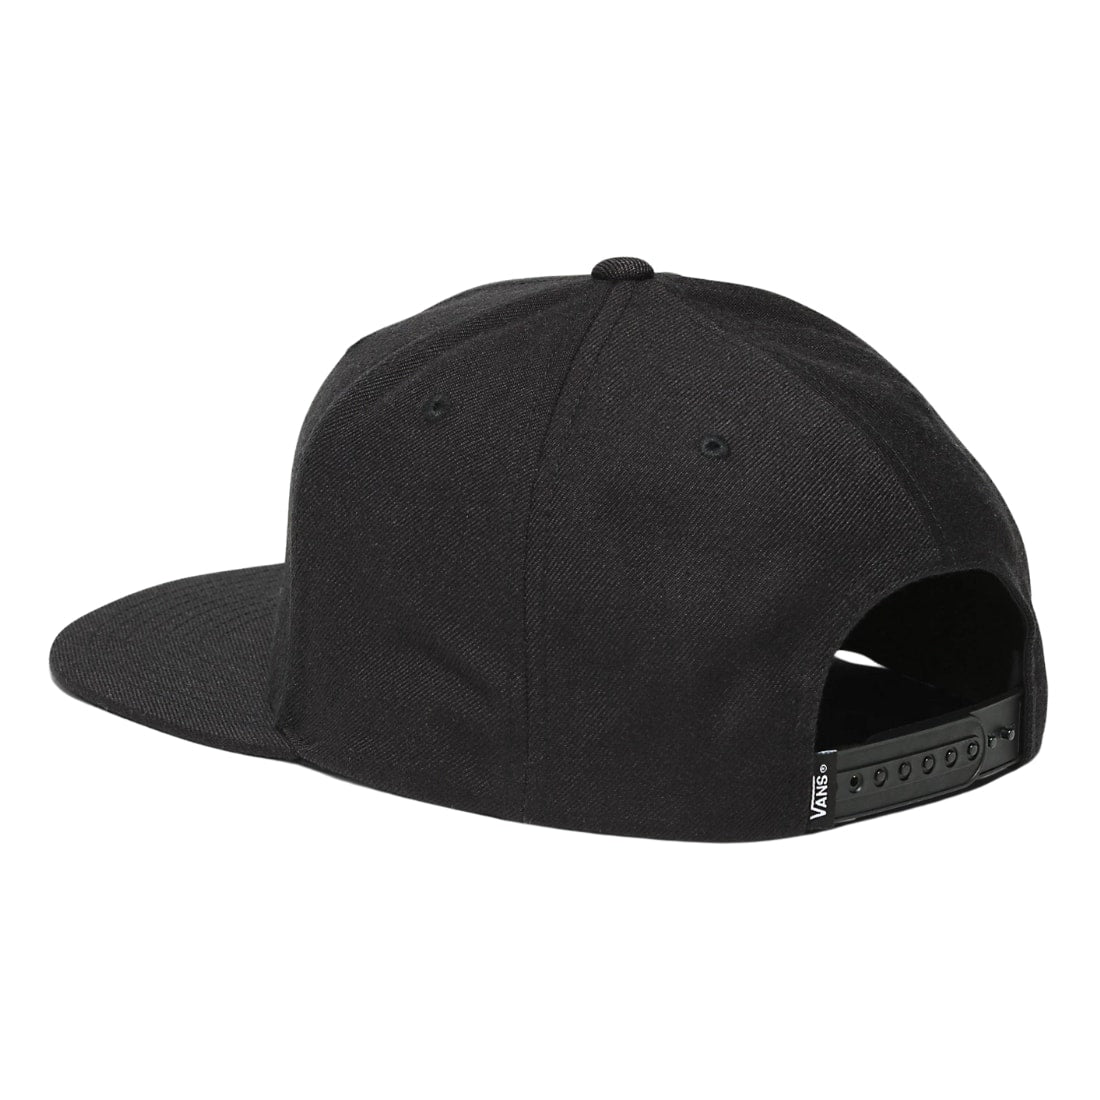 Vans Drop V II Snapback Hat Cap - Black/White - Snapback Cap by Vans One Size